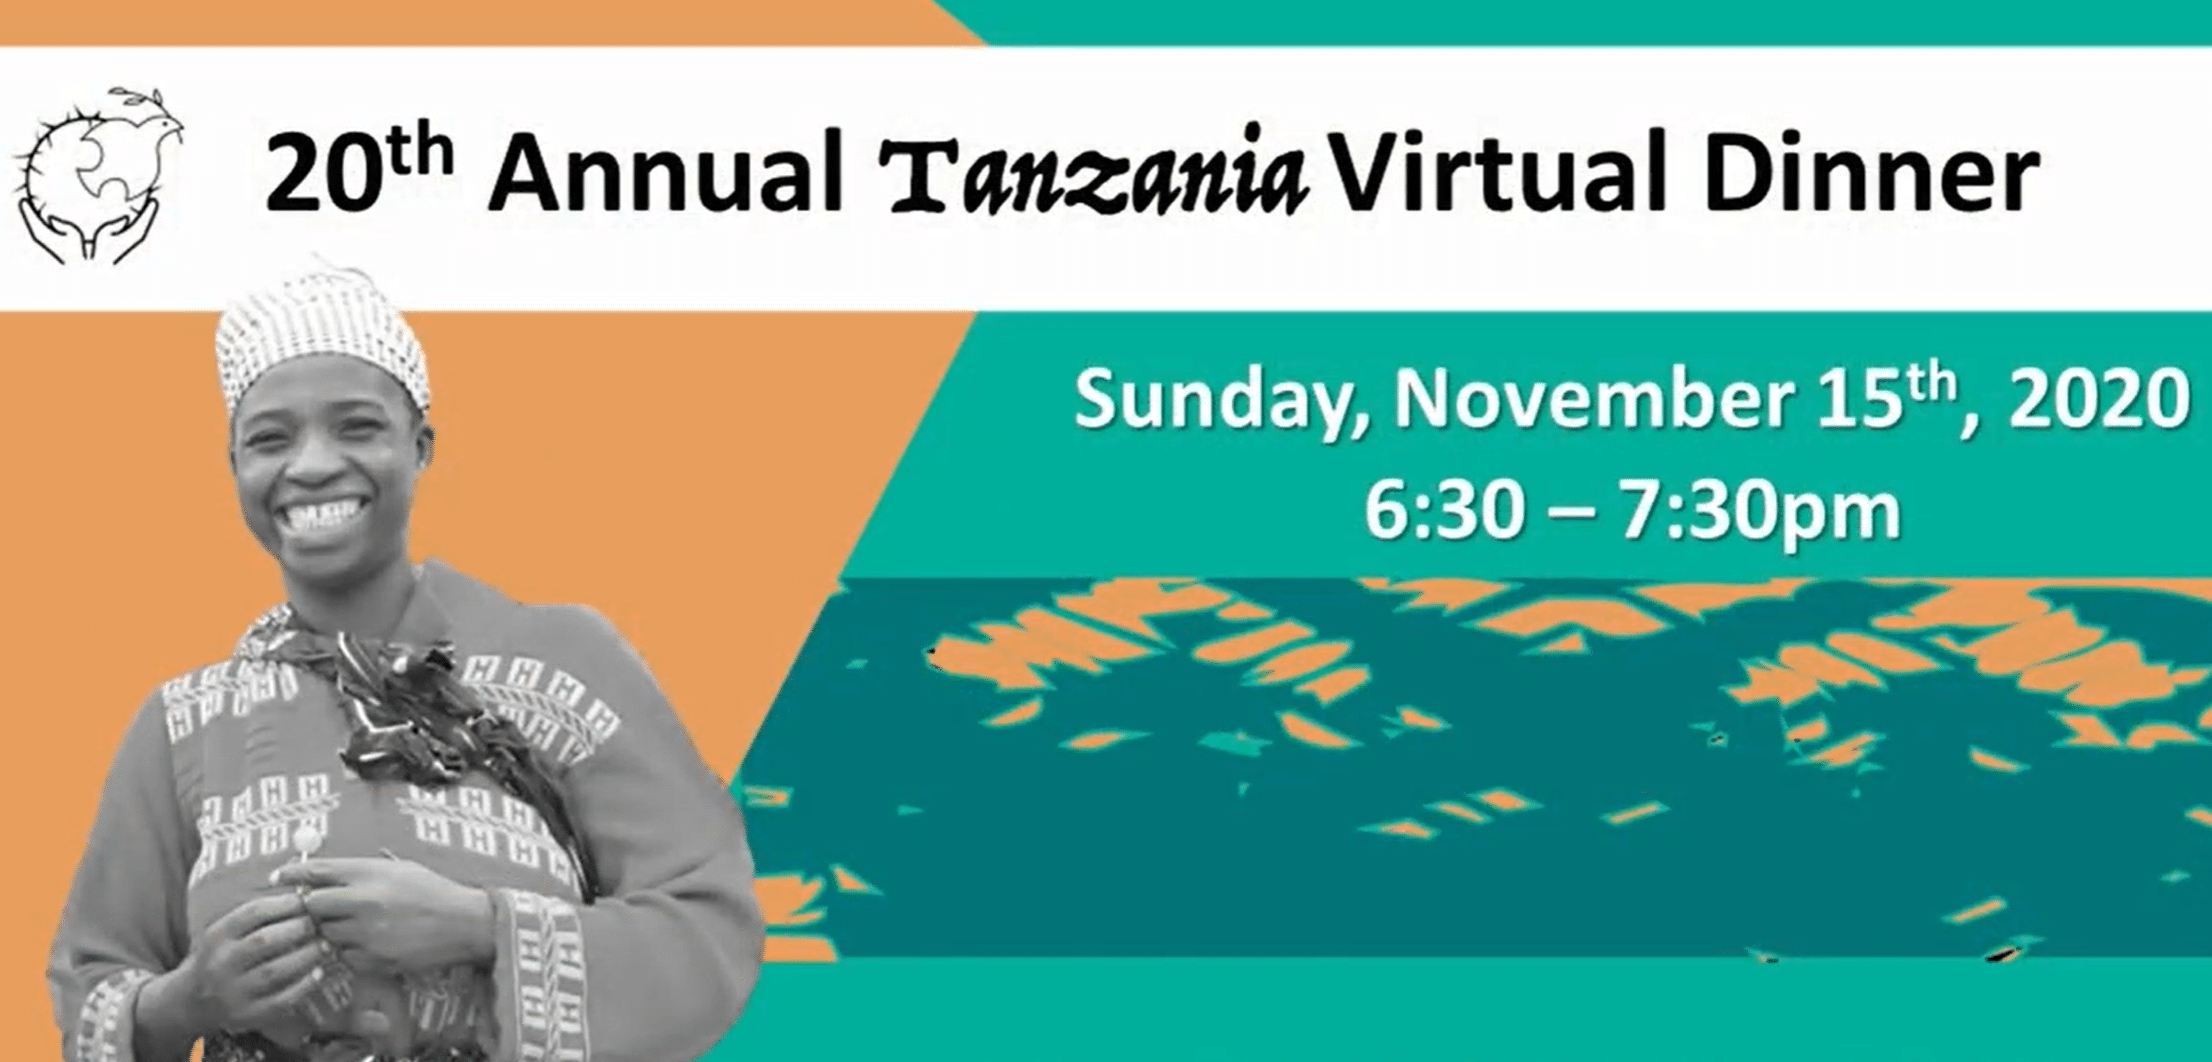 20th Annual Tanzania “Virtual Dinner”